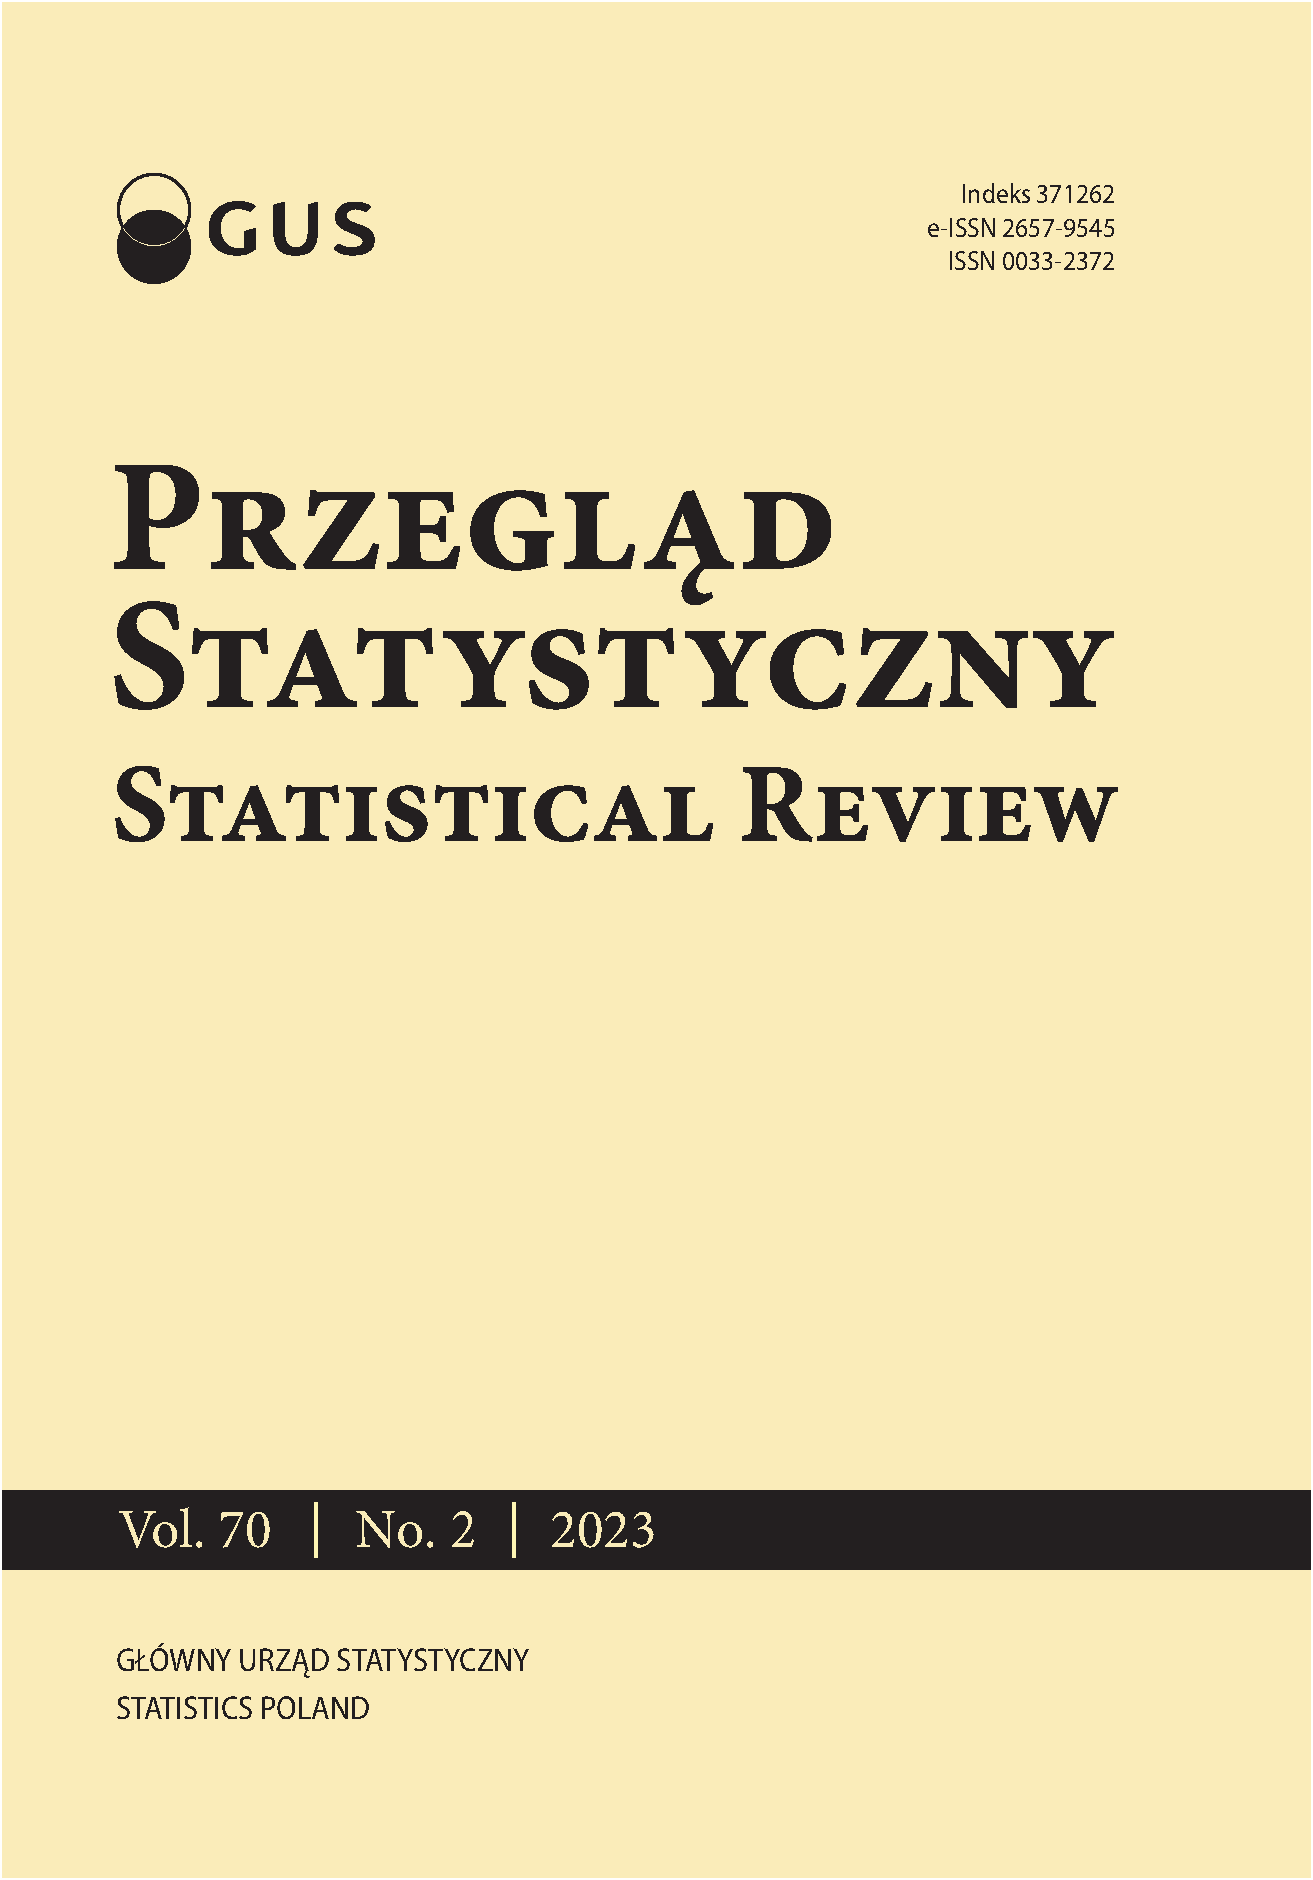 Professor Czesław Domański – 55 years devoted to statistics Cover Image